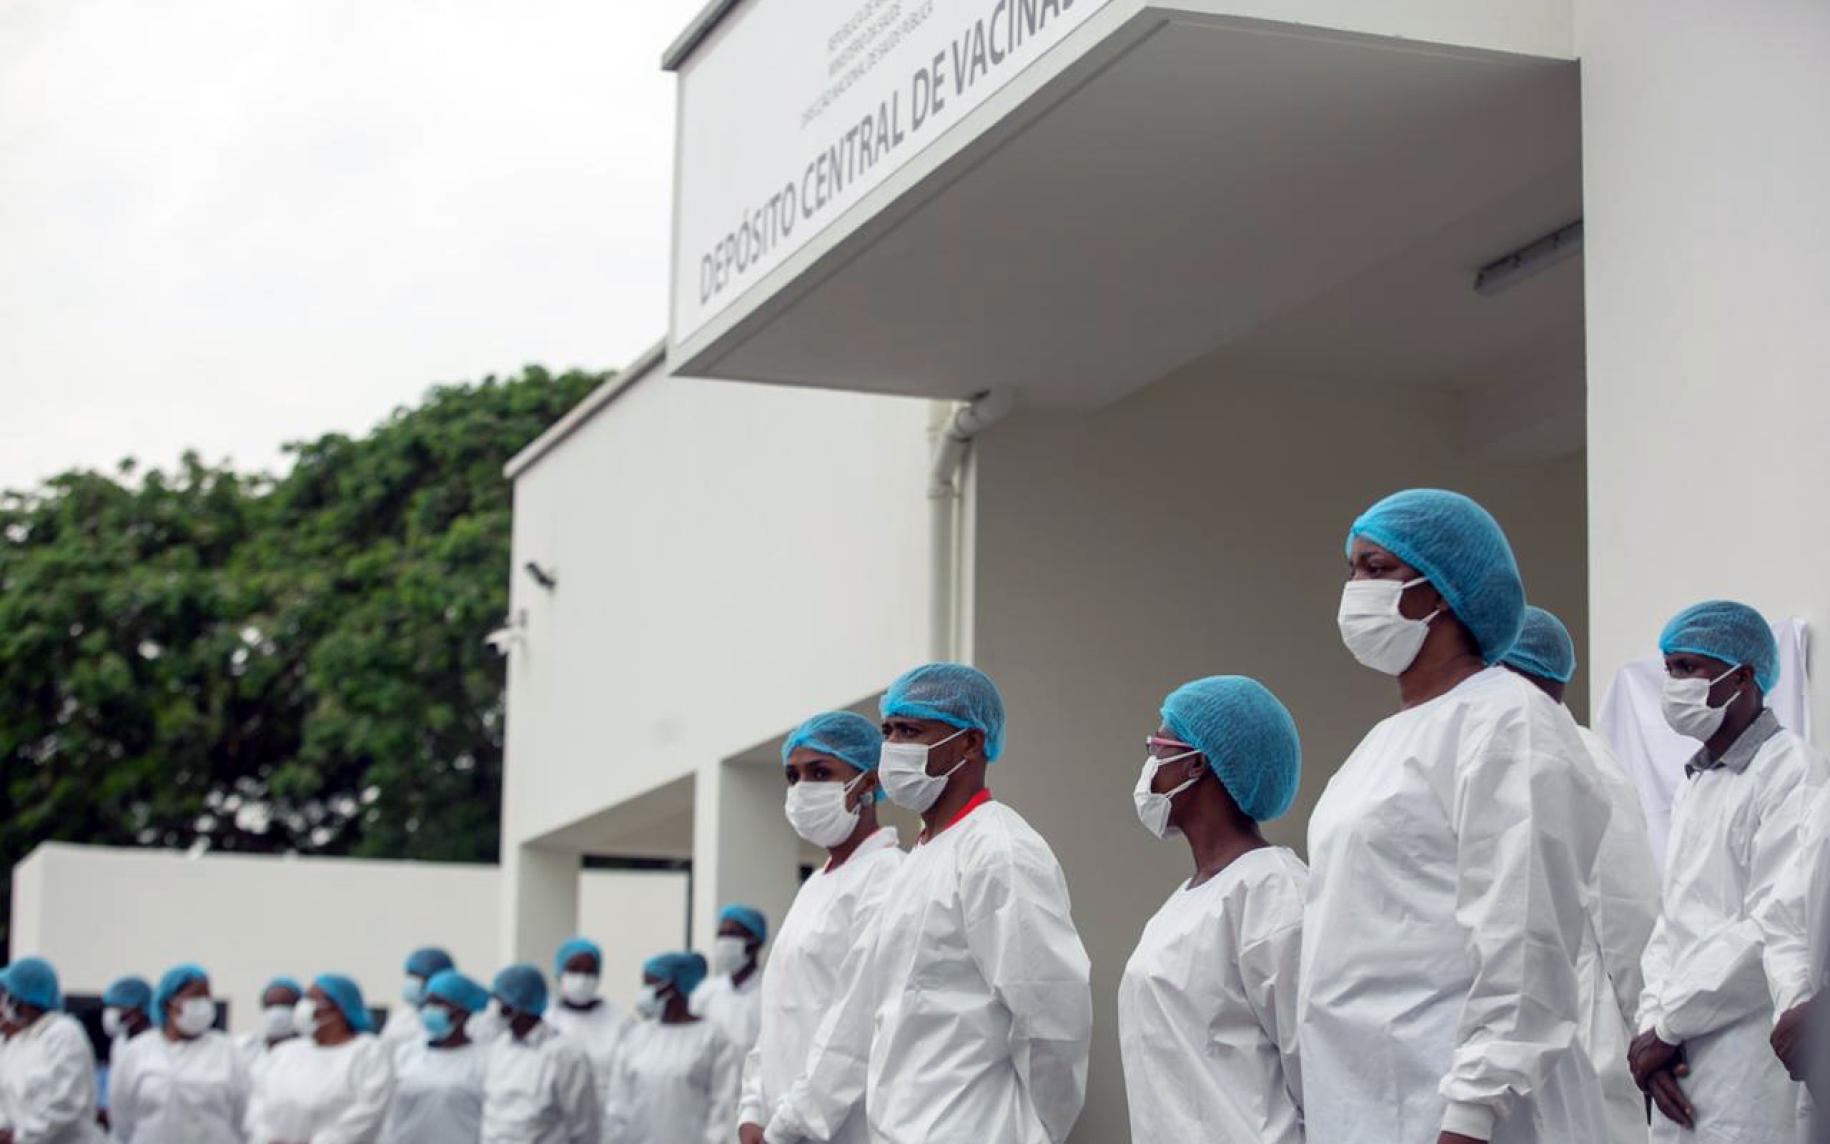 Los profesionales de la salud hacen fila fuera de la locación de vacunación para administrar las primeras vacunas COVID-19 de Angola.